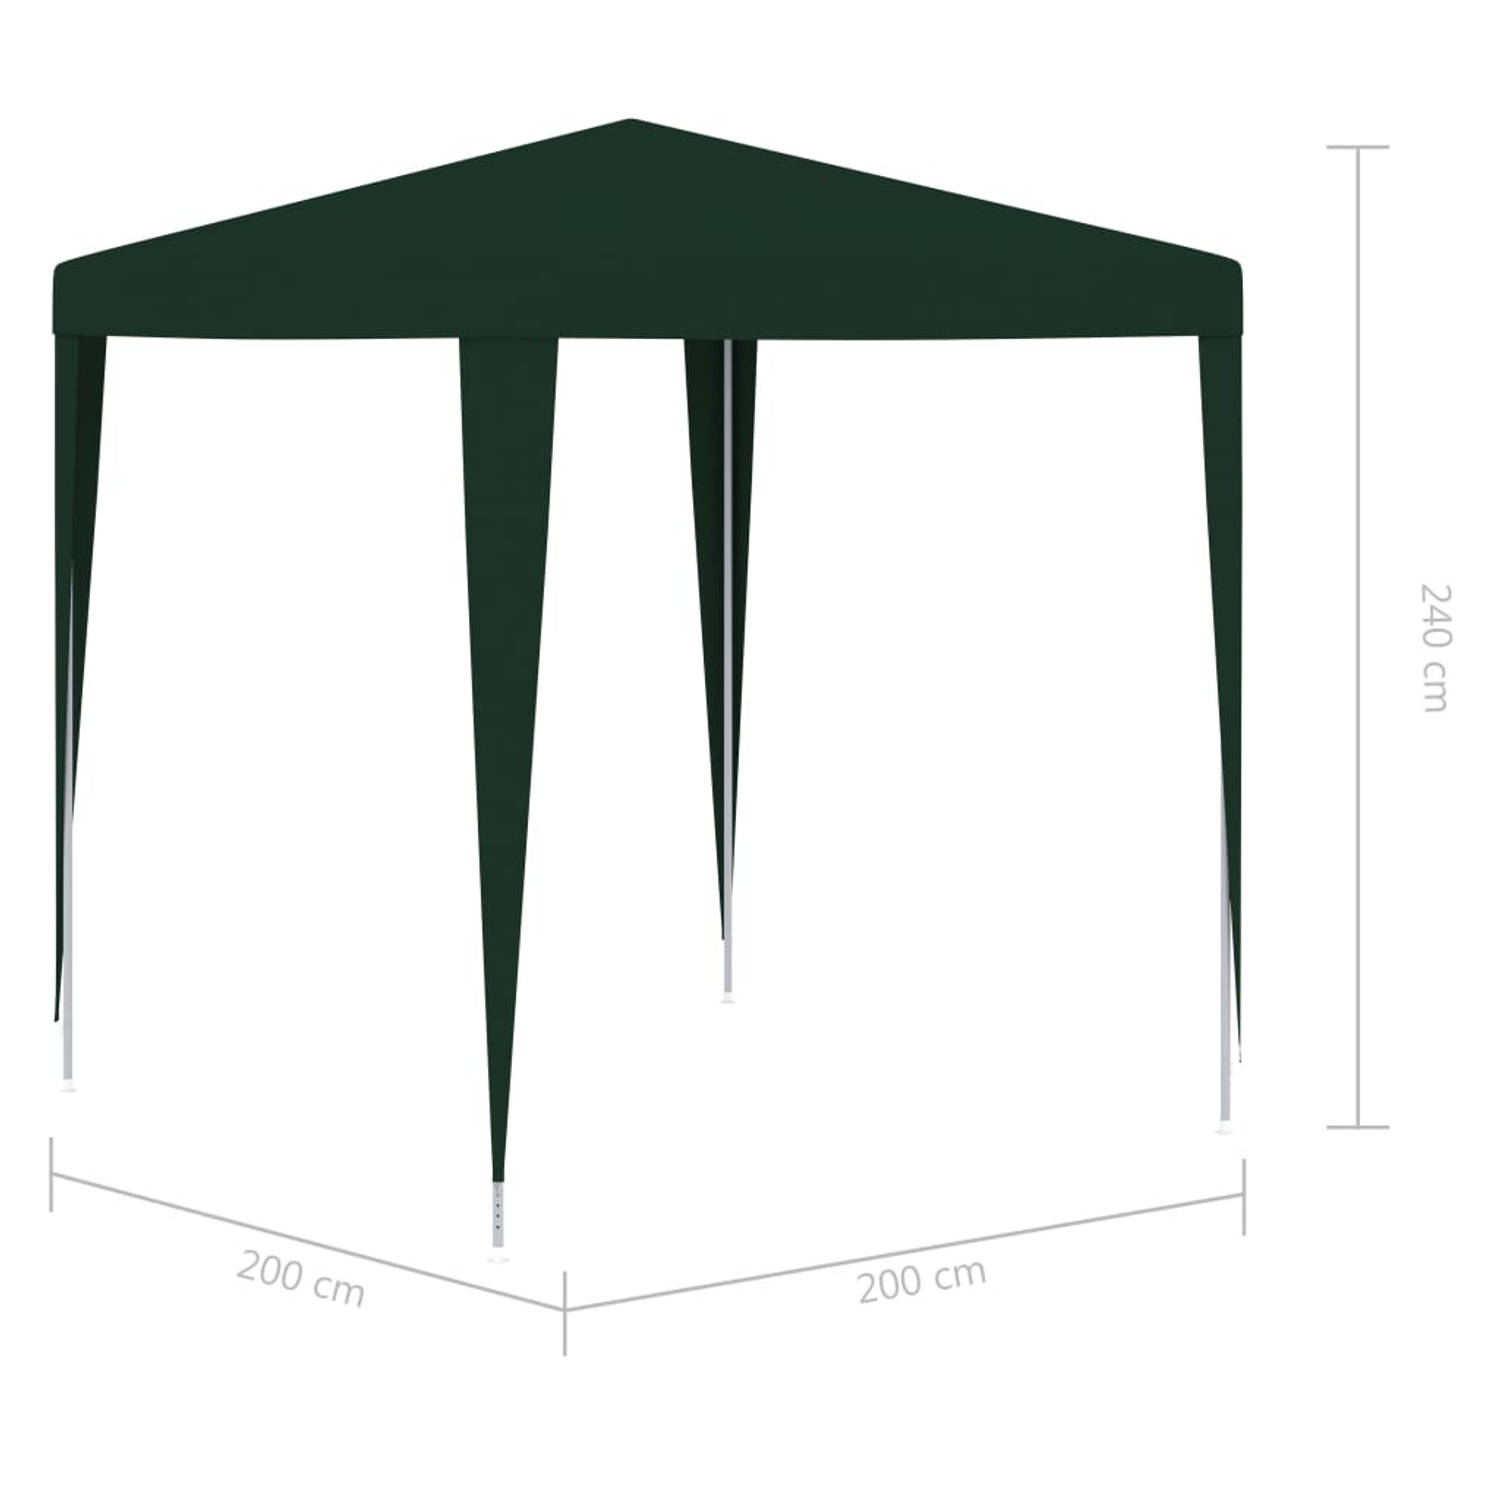 Delegeren Keel bladeren vidaXL Partytent professioneel 2x2 m groen | Blokker